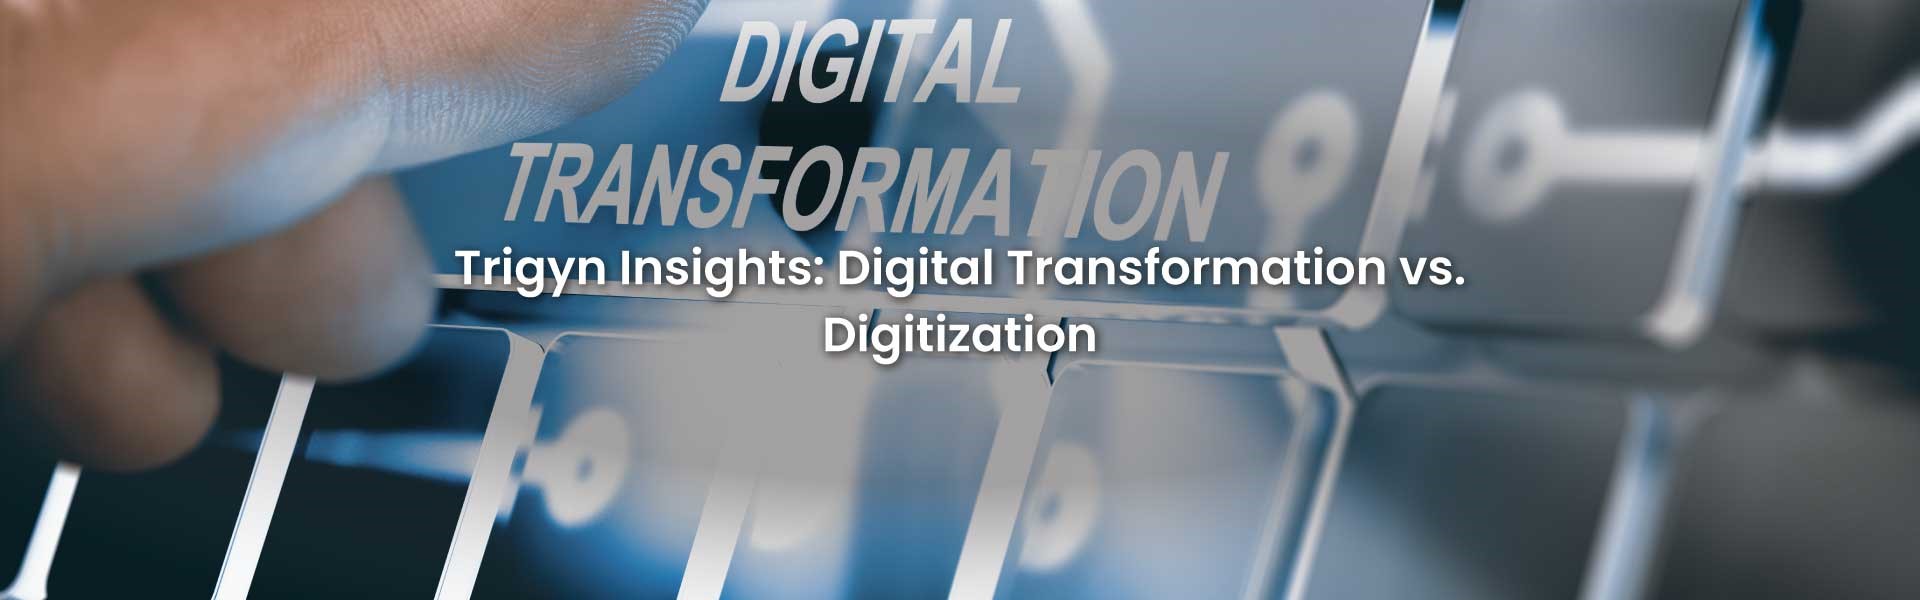 Digital Transformation vs. Digitization 